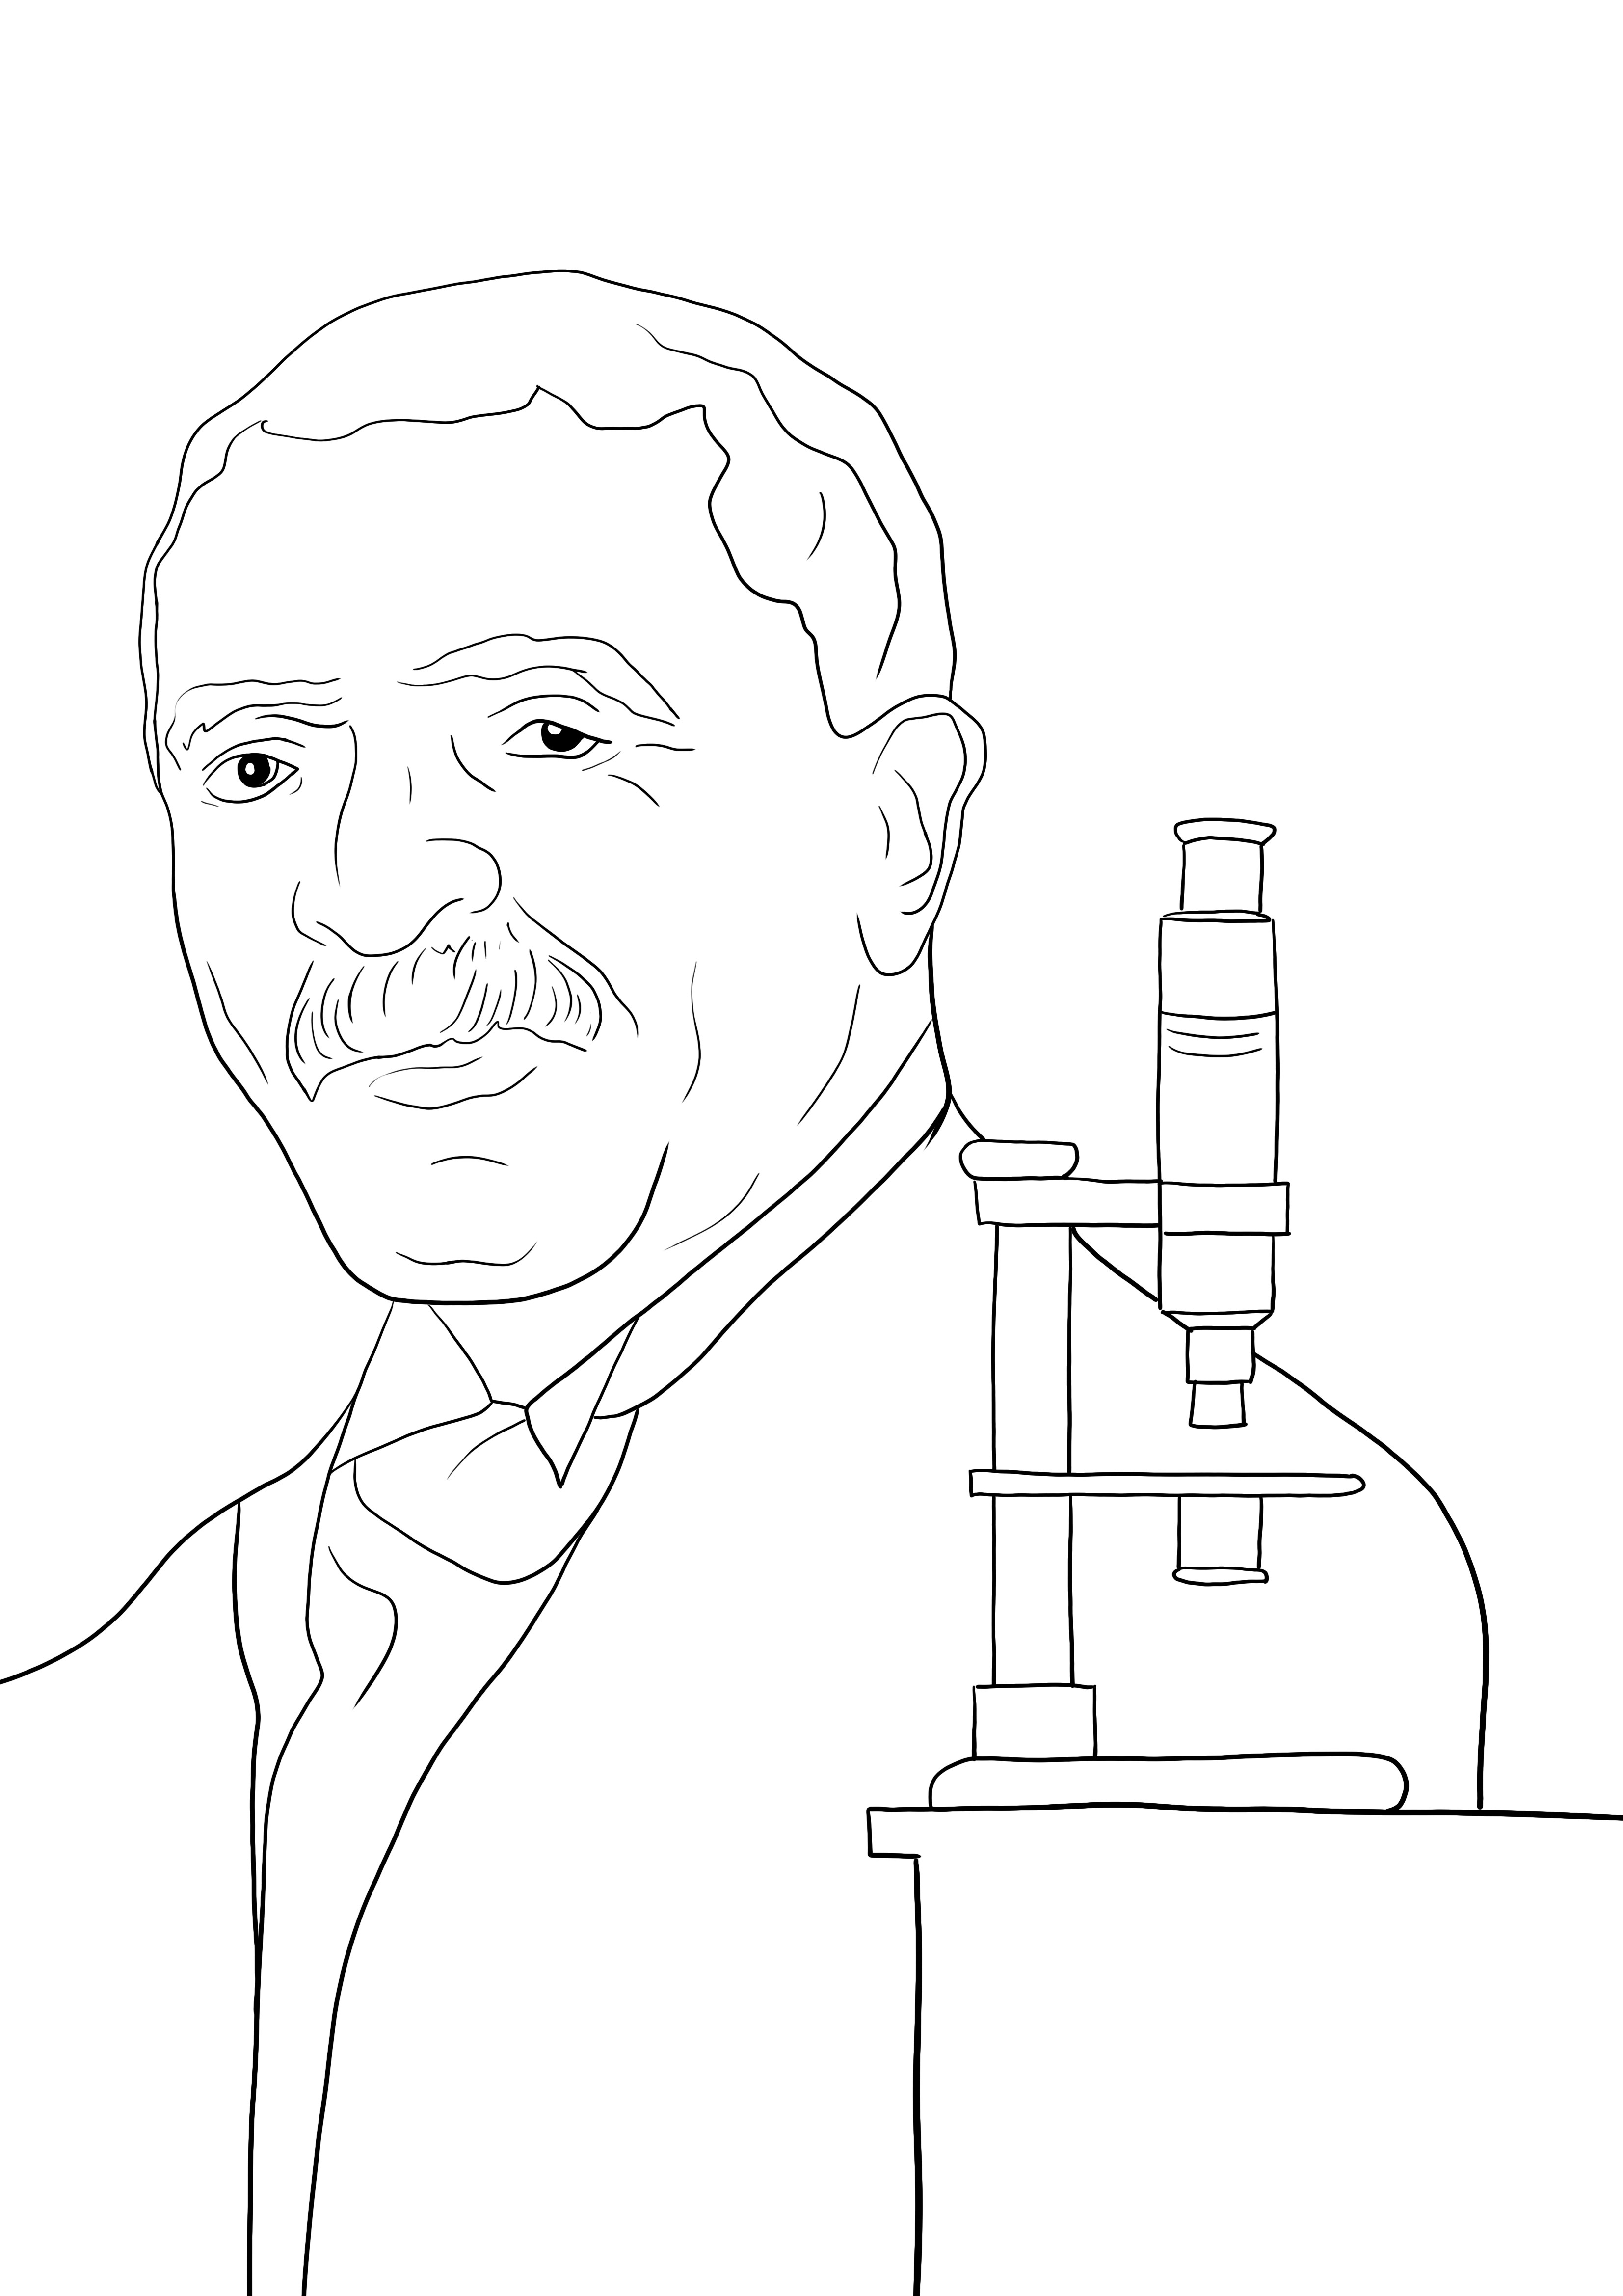 George Washington Carver színező oldal ingyenesen használható